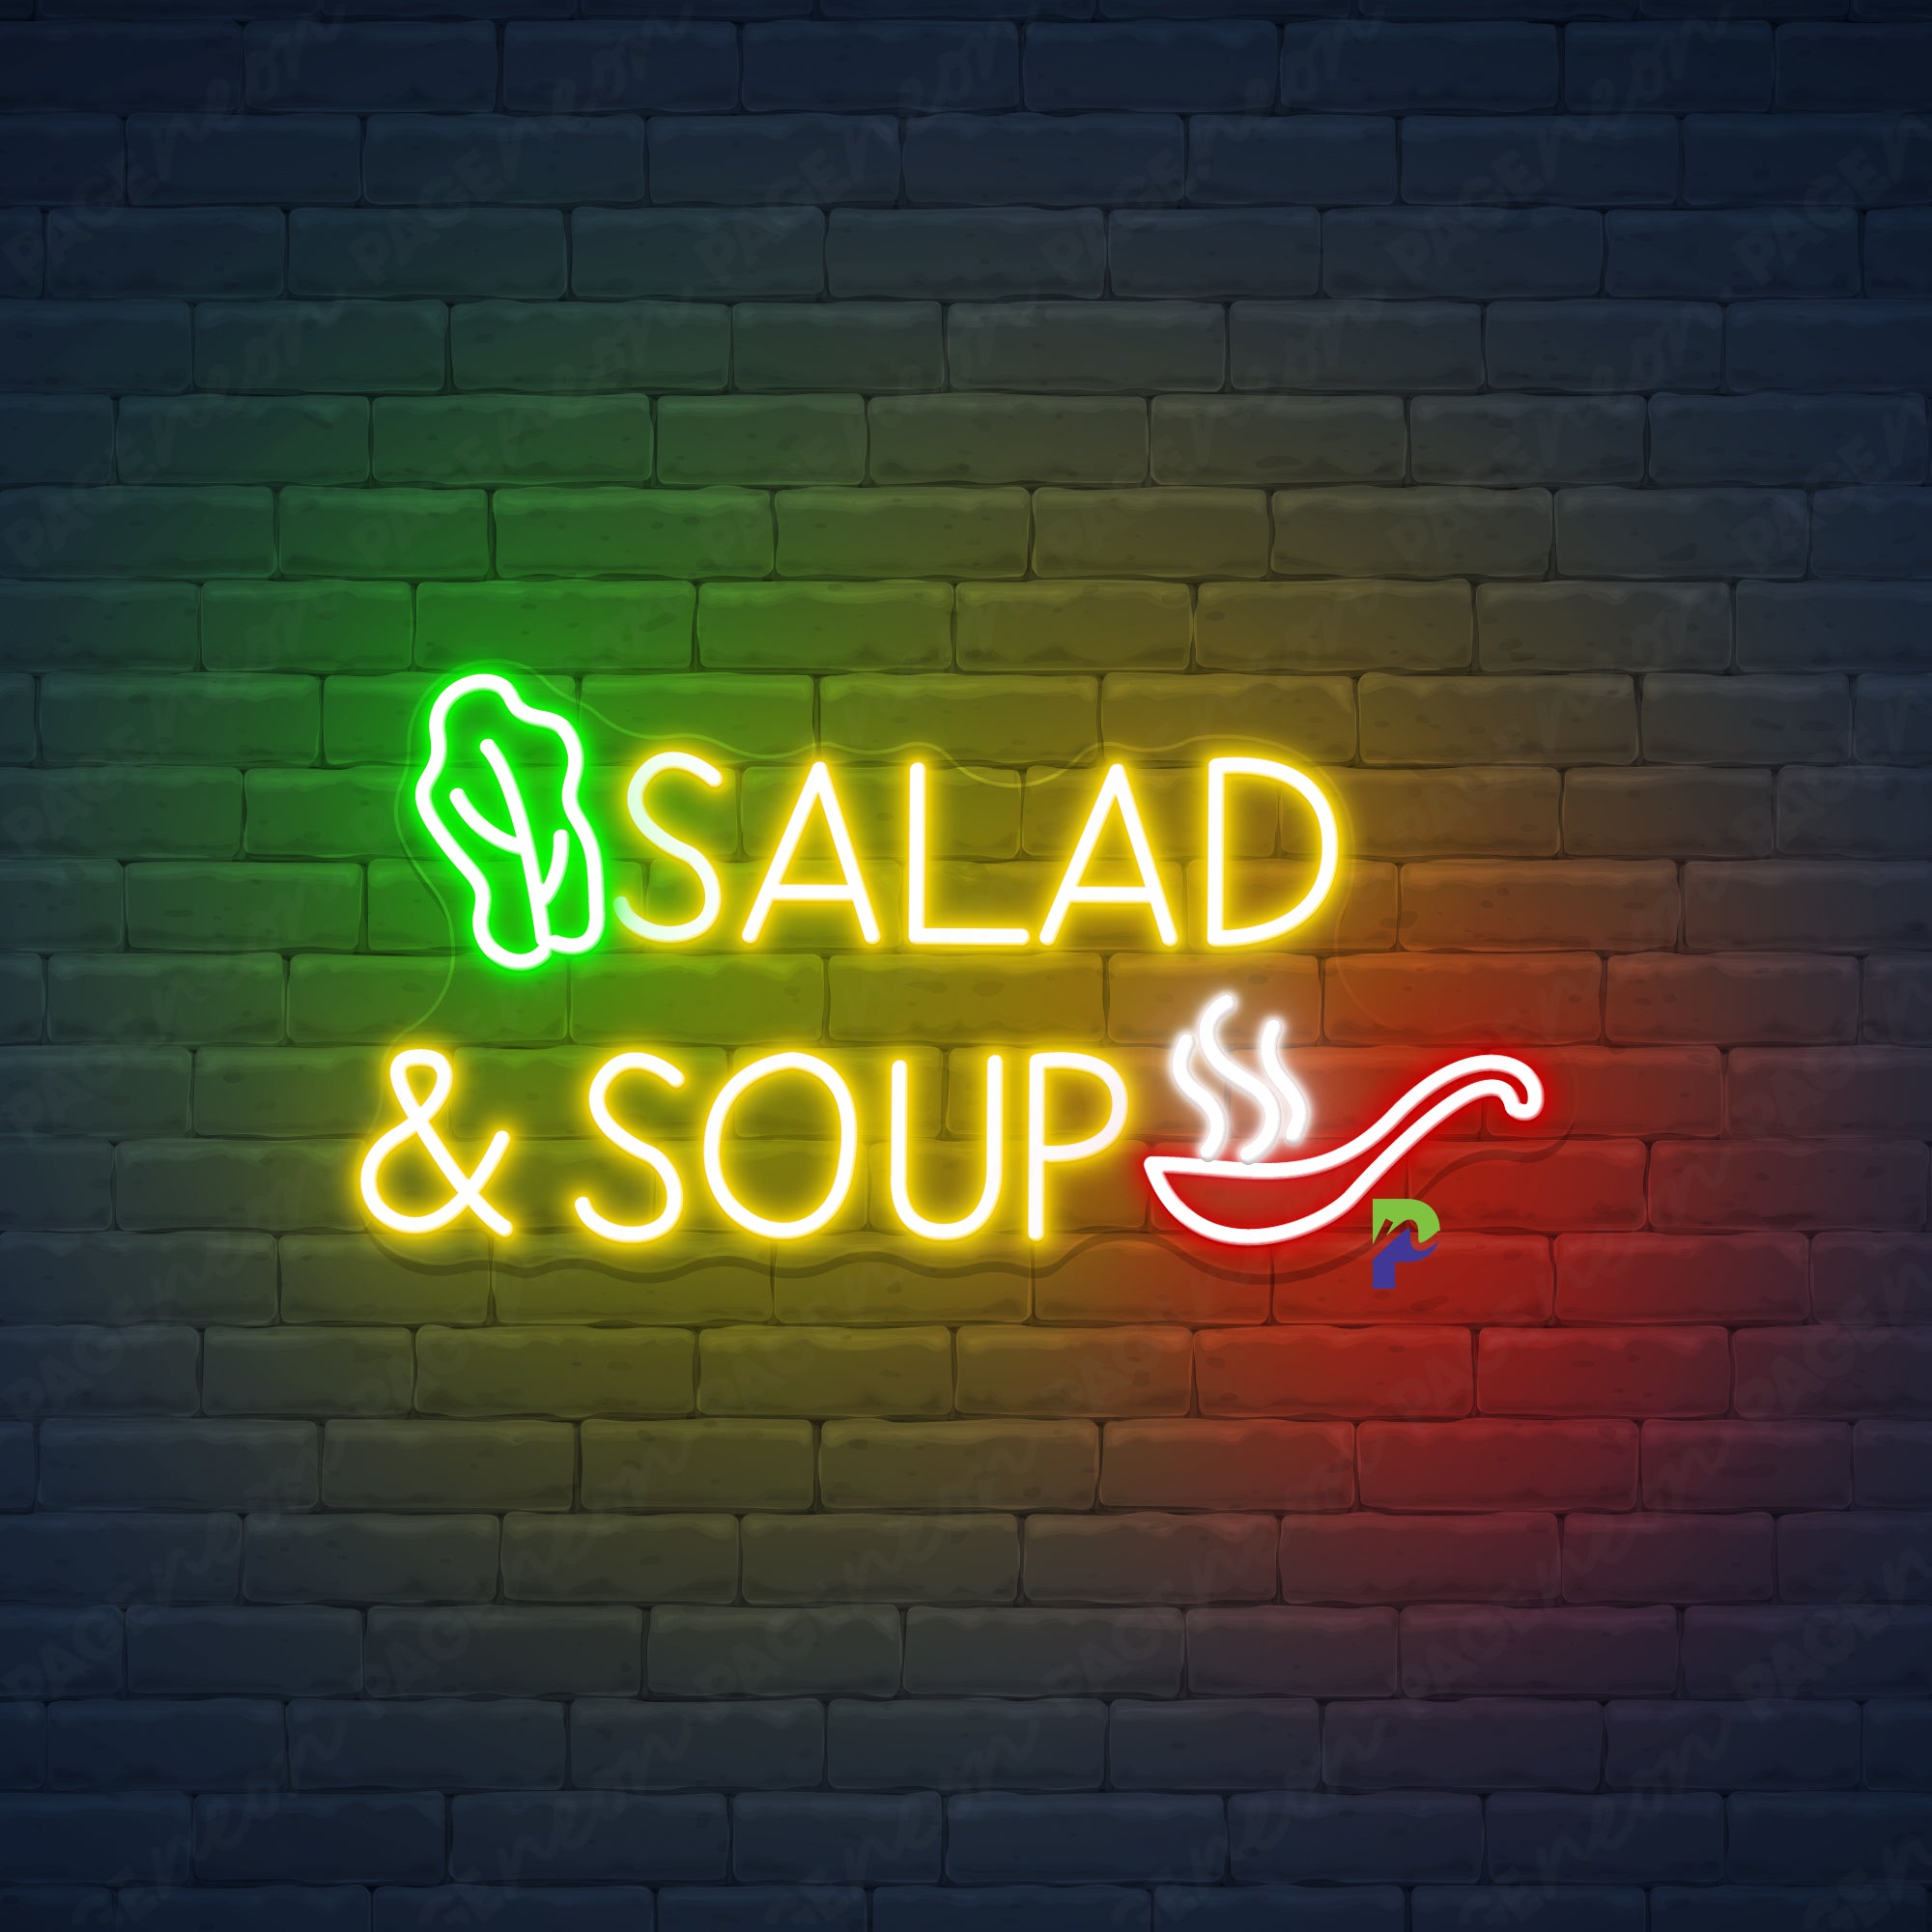 Salad & Soup Neon Sign Restaurant Led Light